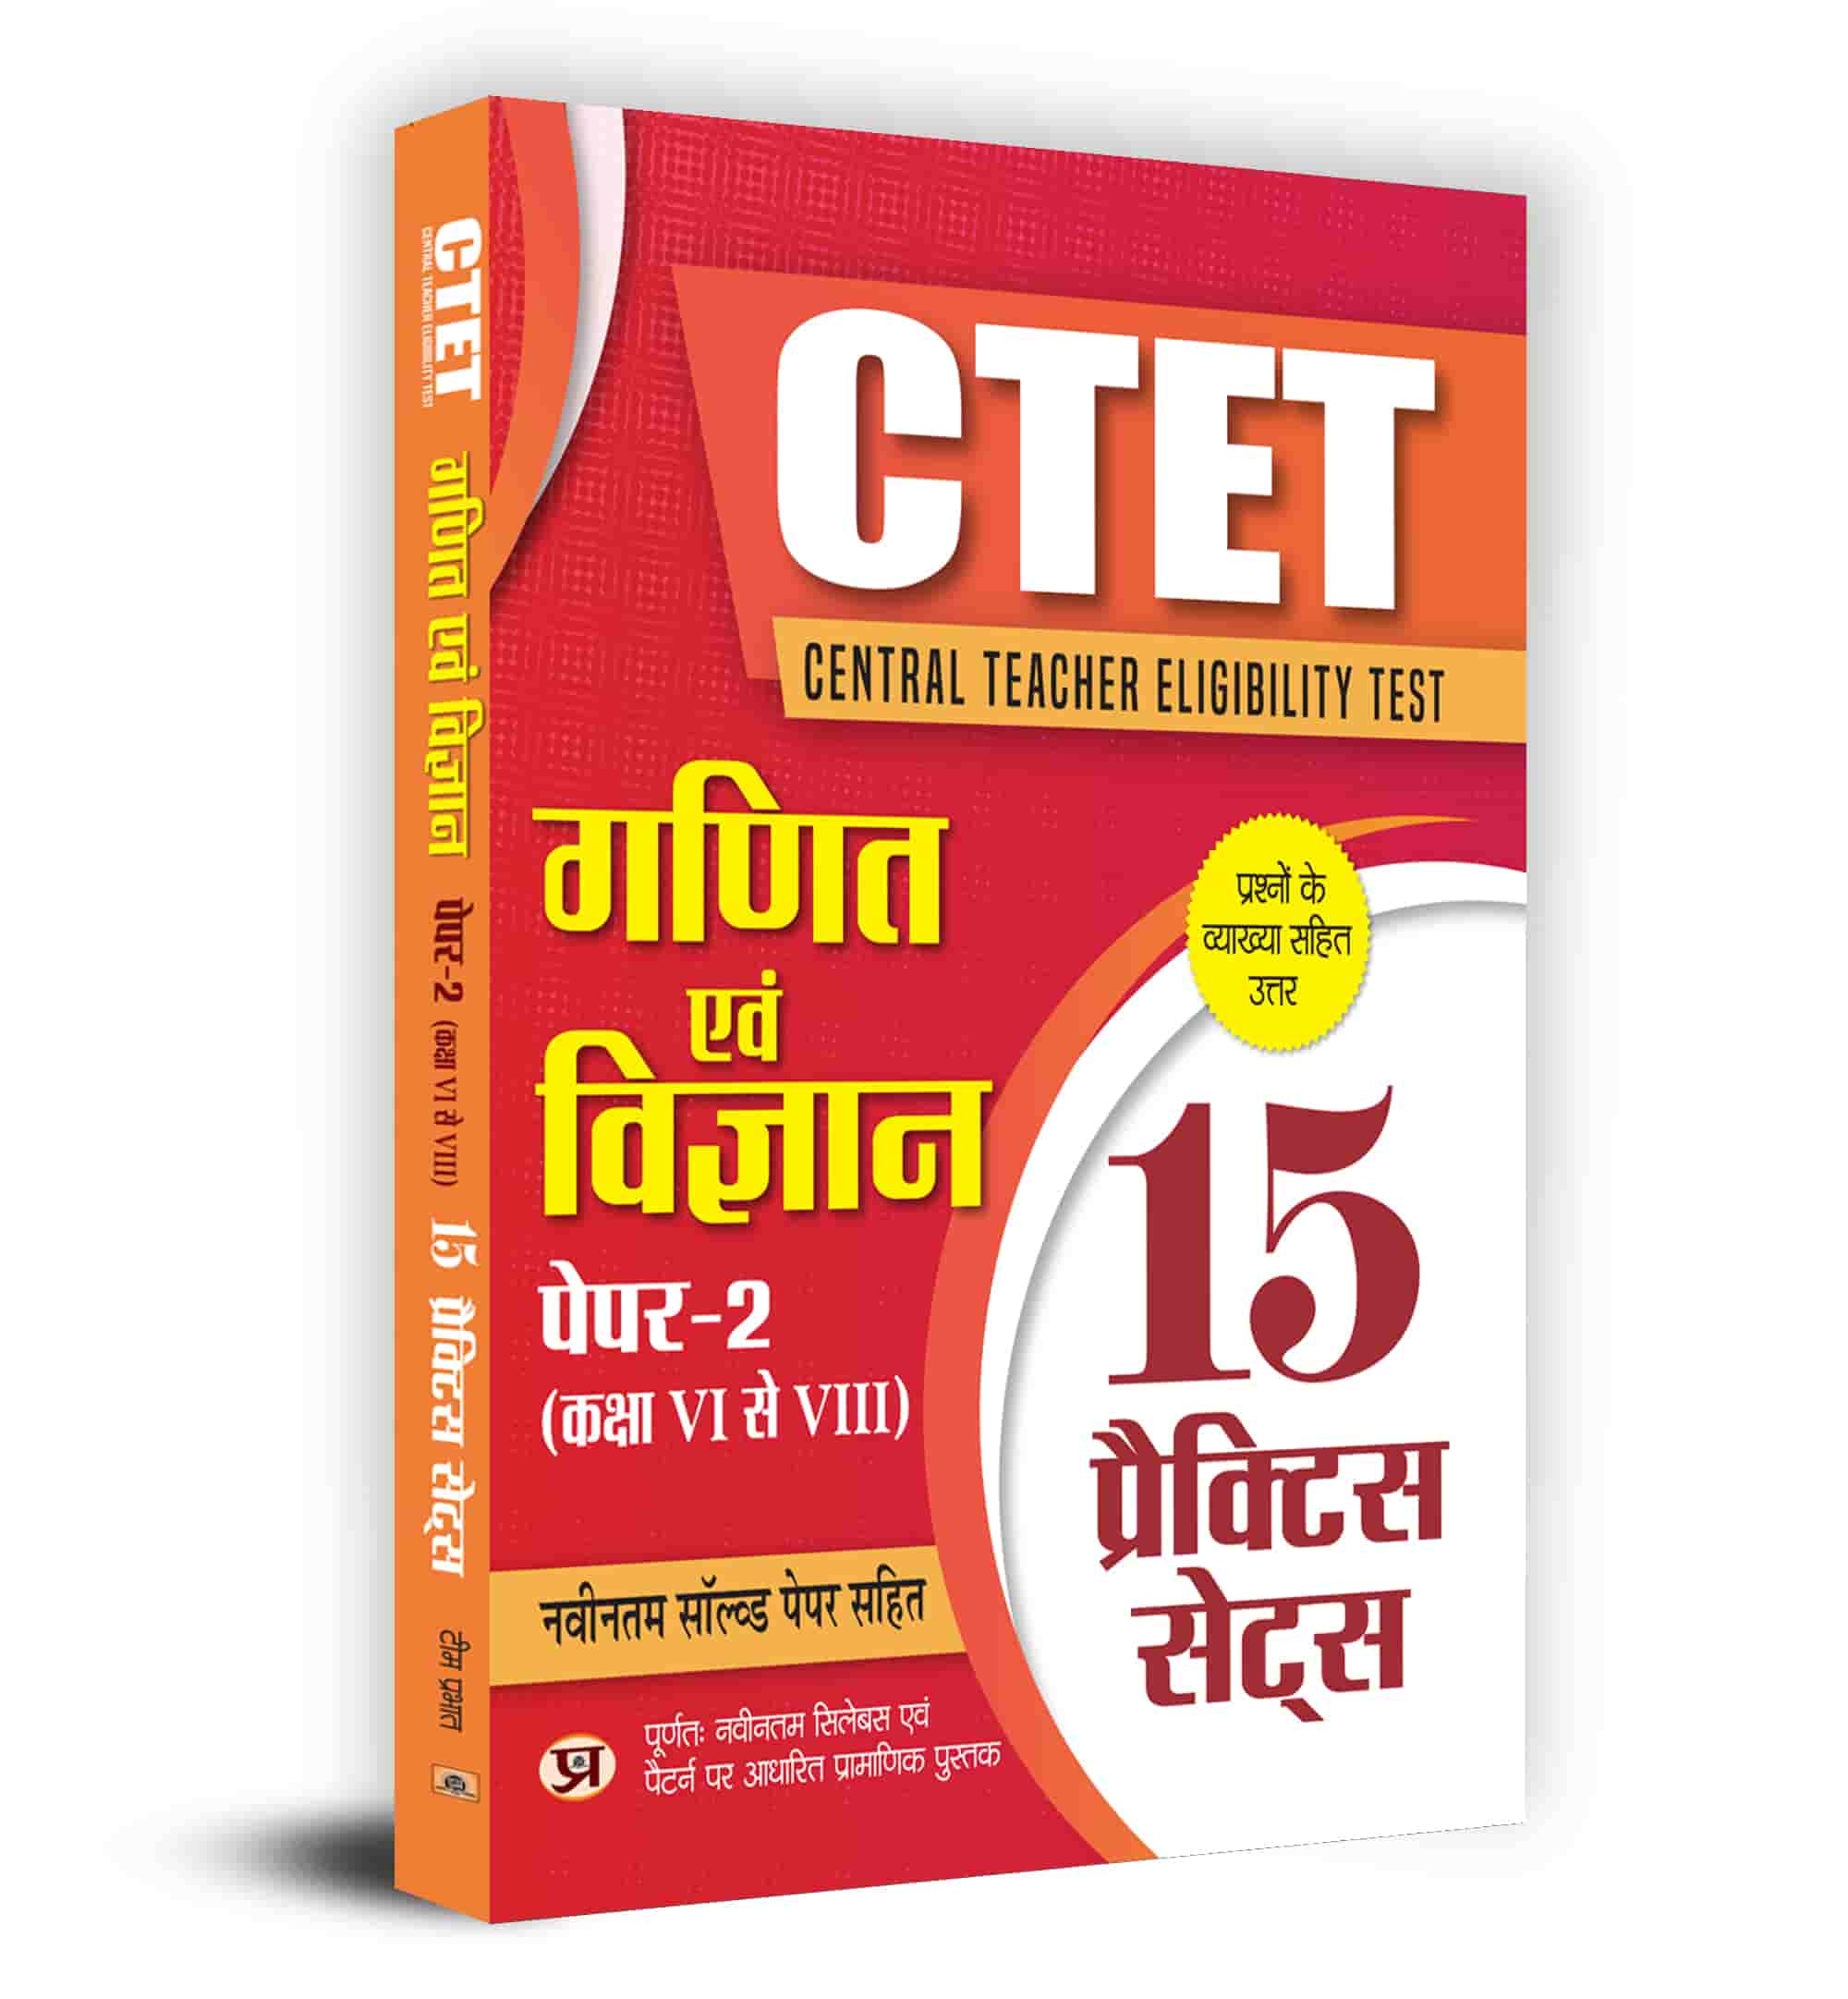 CTET Central Teacher Eligibility Test Paper-2 (Class Vi-Viii) Ganit Ev... 